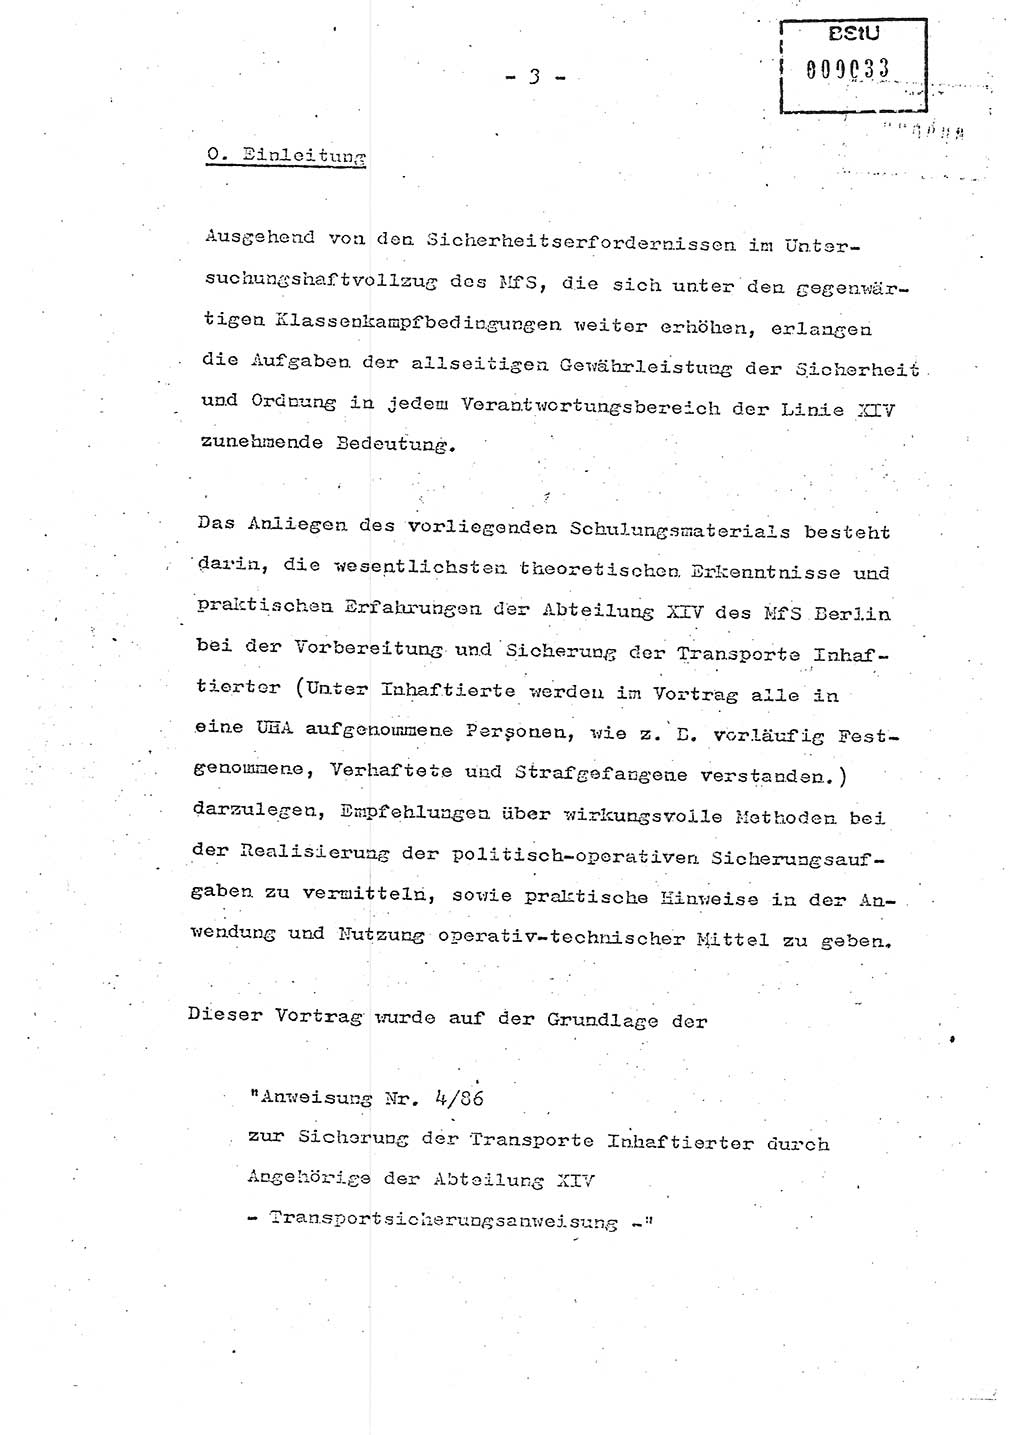 Schulungsmaterial Exemplar-Nr.: 7, Ministerium für Staatssicherheit [Deutsche Demokratische Republik (DDR)], Abteilung (Abt.) ⅩⅣ, Berlin 1986, Seite 3 (Sch.-Mat. Expl. 7 MfS DDR Abt. ⅩⅣ /86 1986, S. 3)